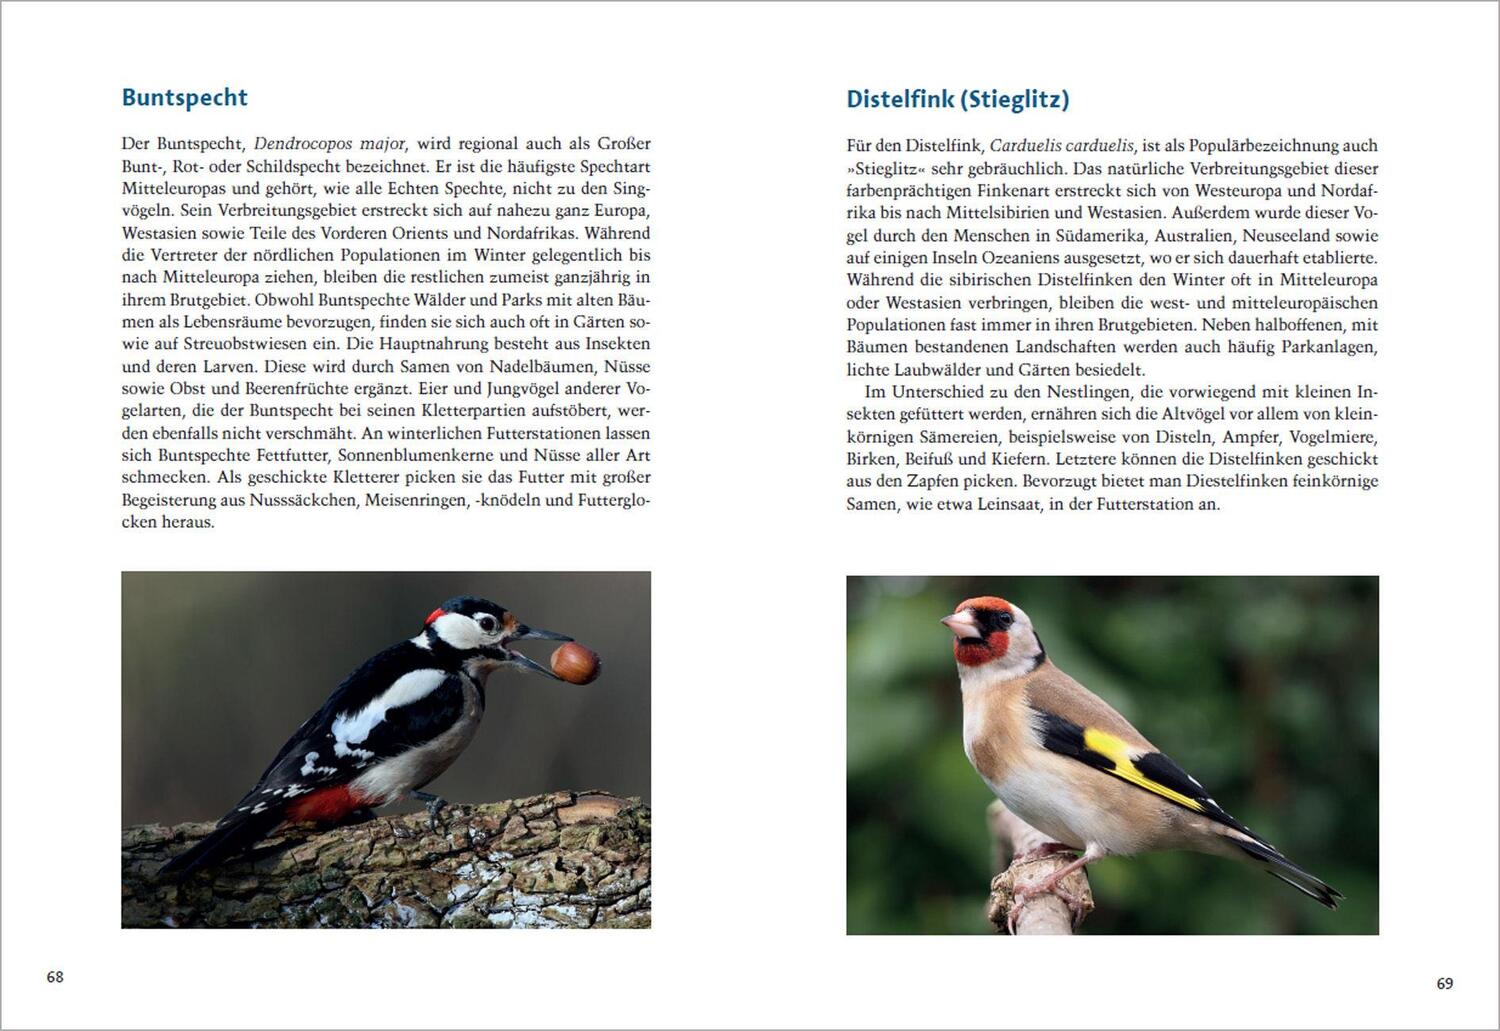 Bild: 9783730608906 | Unsere heimischen Vögel richtig füttern | Axel Gutjahr | Taschenbuch